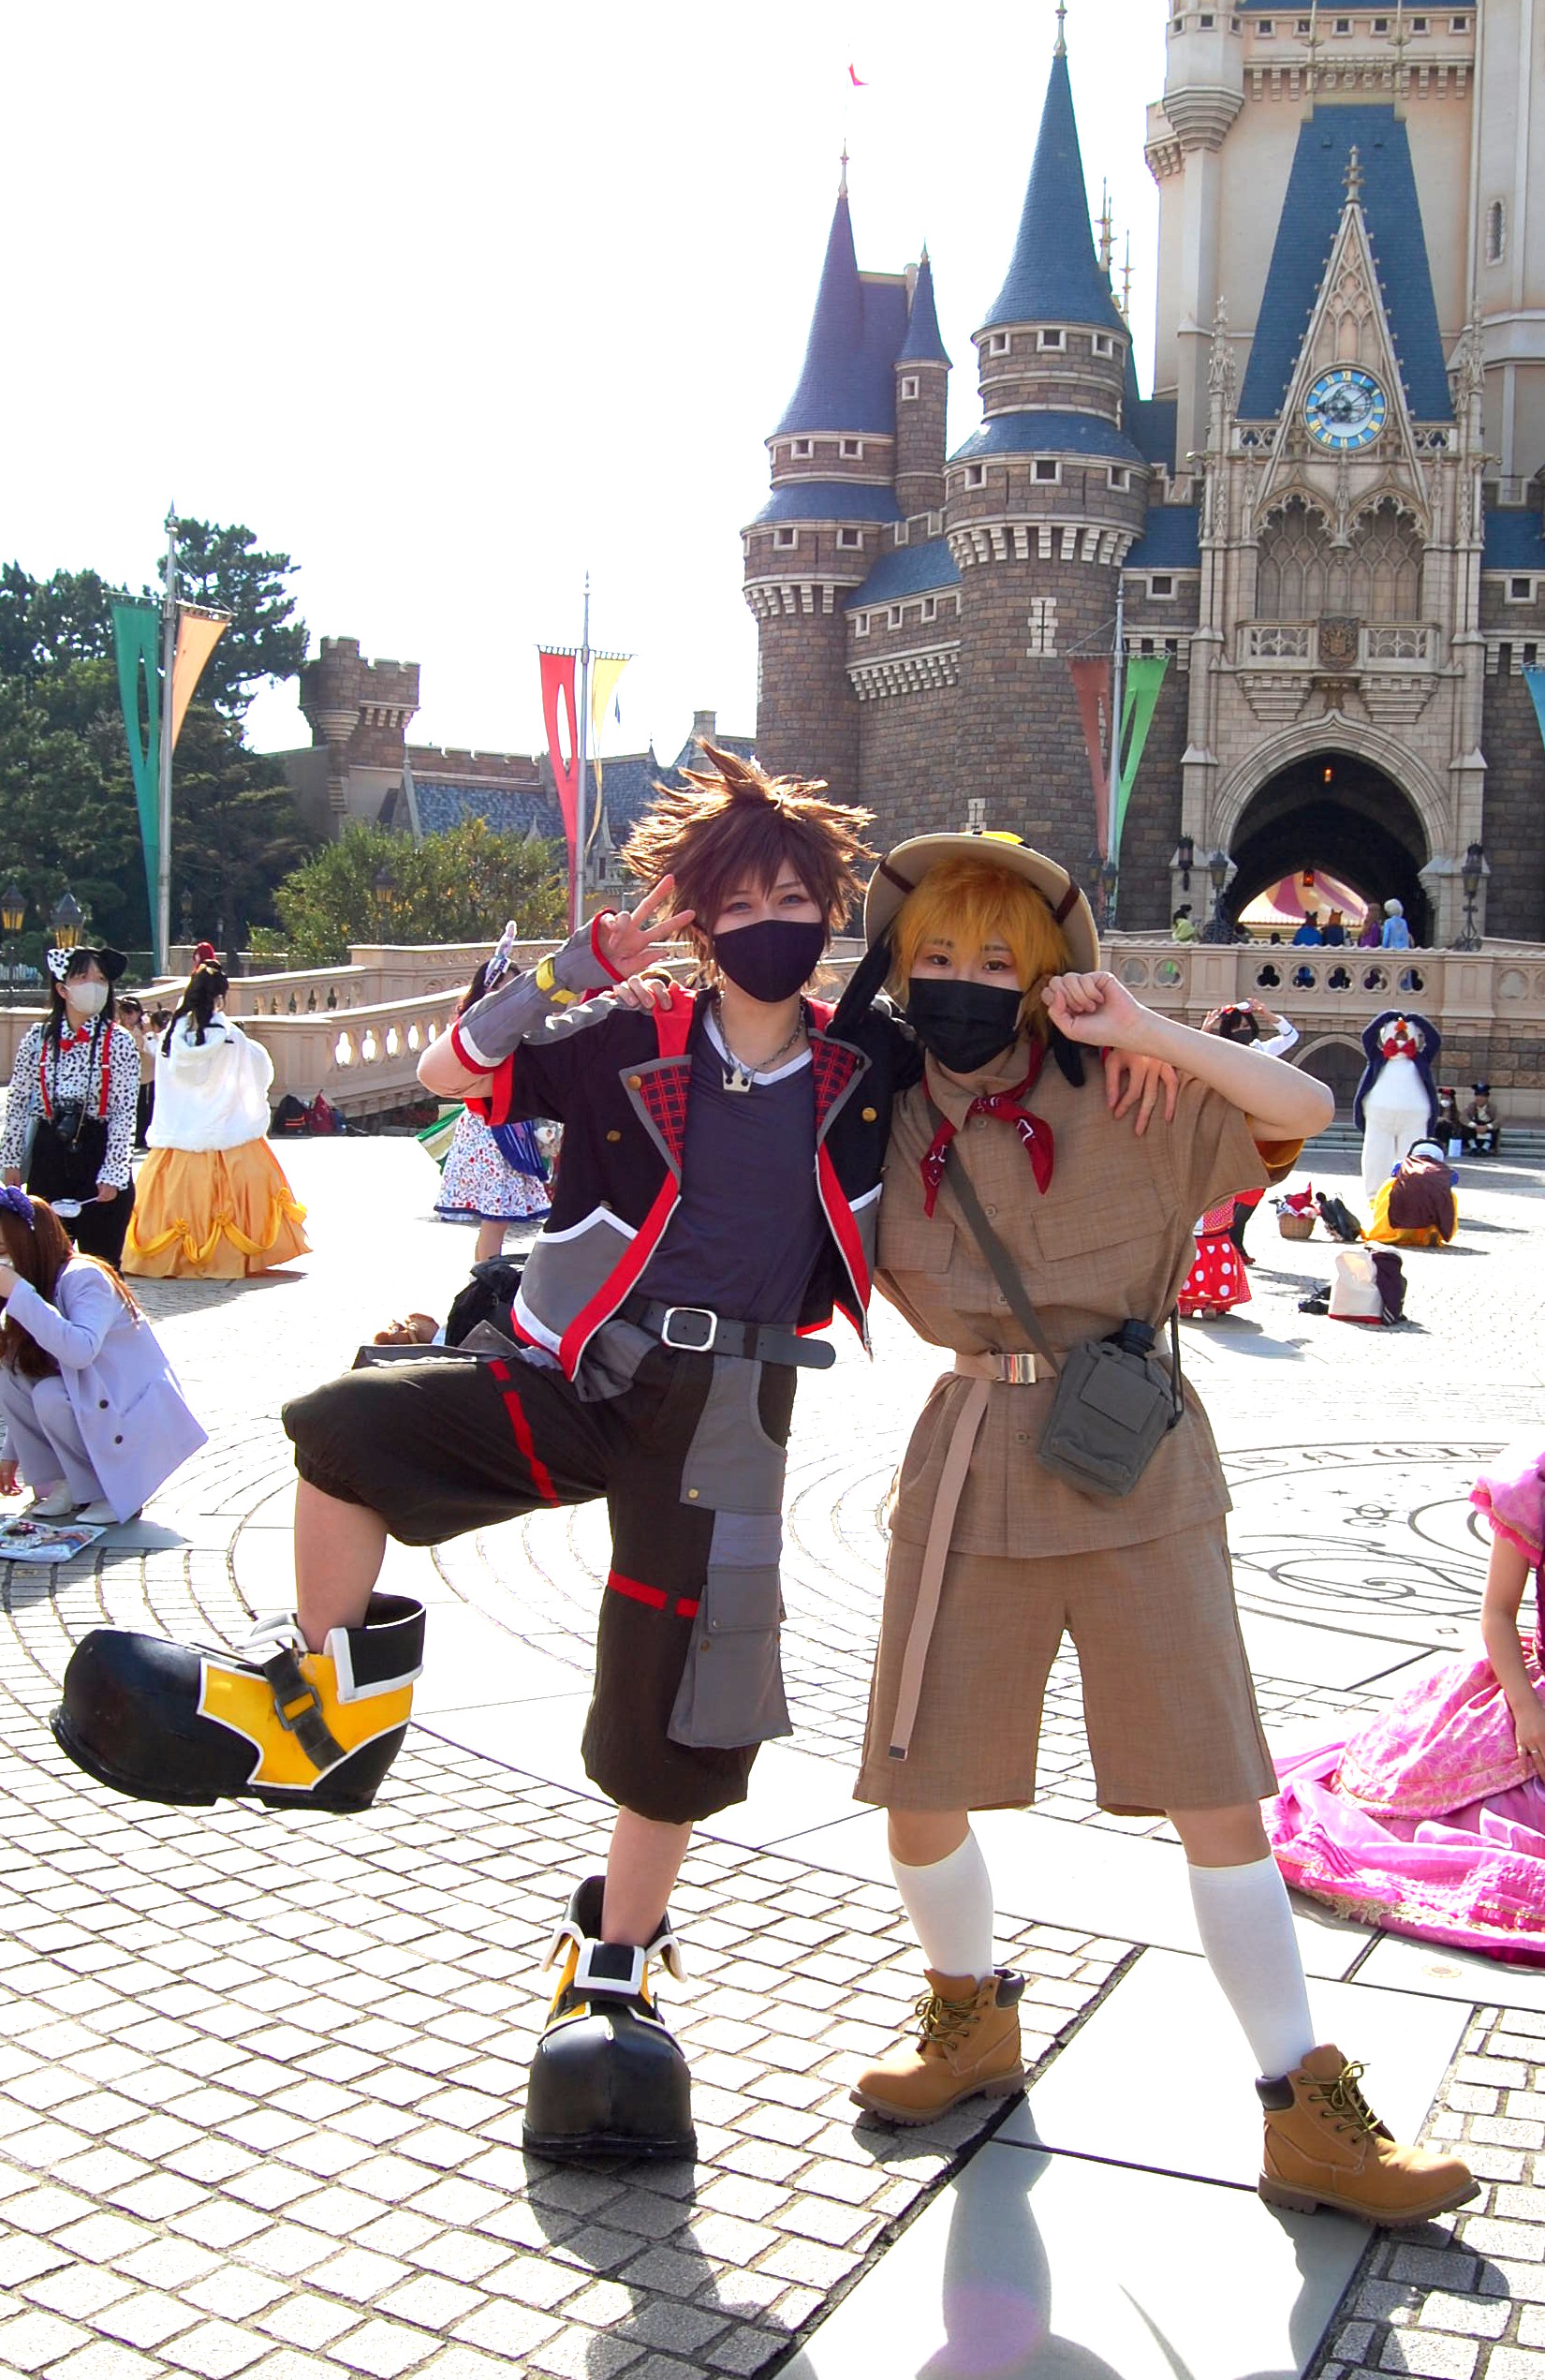 ハロウィーン フル仮装 復活の 東京ディズニーランド 素敵な皆さまの写真たち ミッキーマウスのグリーティング パレード ニフティニュース